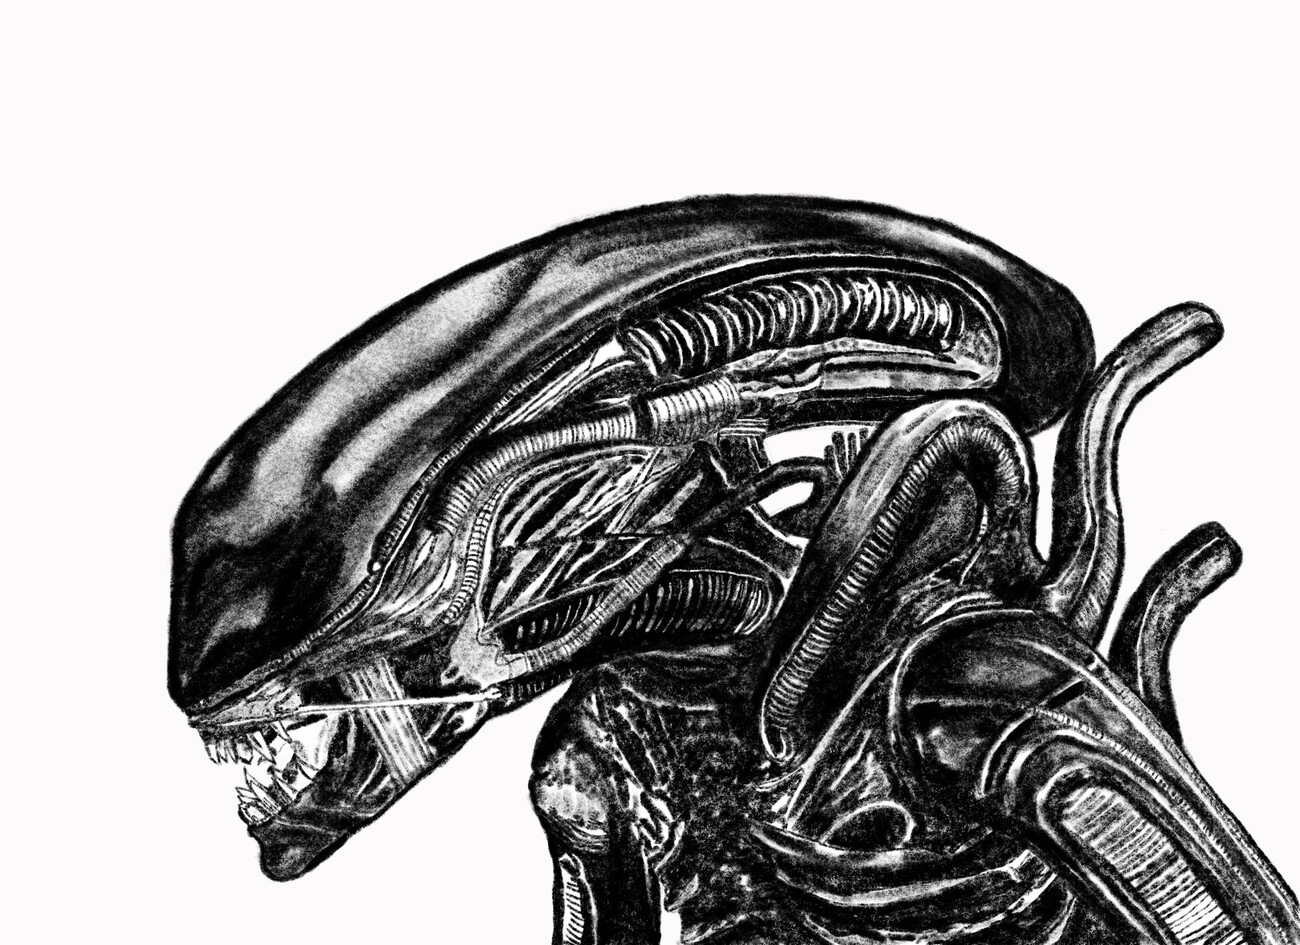 Alien Imagens de Stock de Arte Vetorial